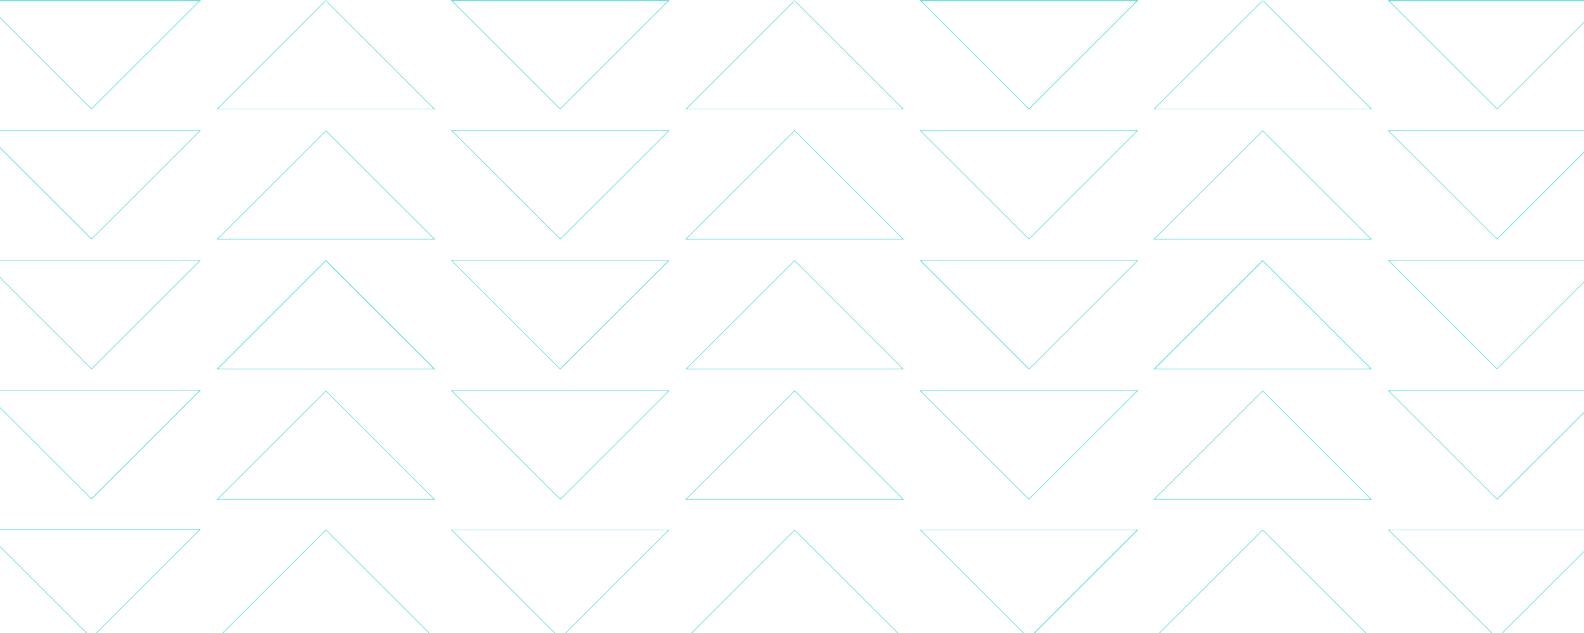 Ilustrasi menunjukkan garis biru tipis membentuk pola segitiga halus